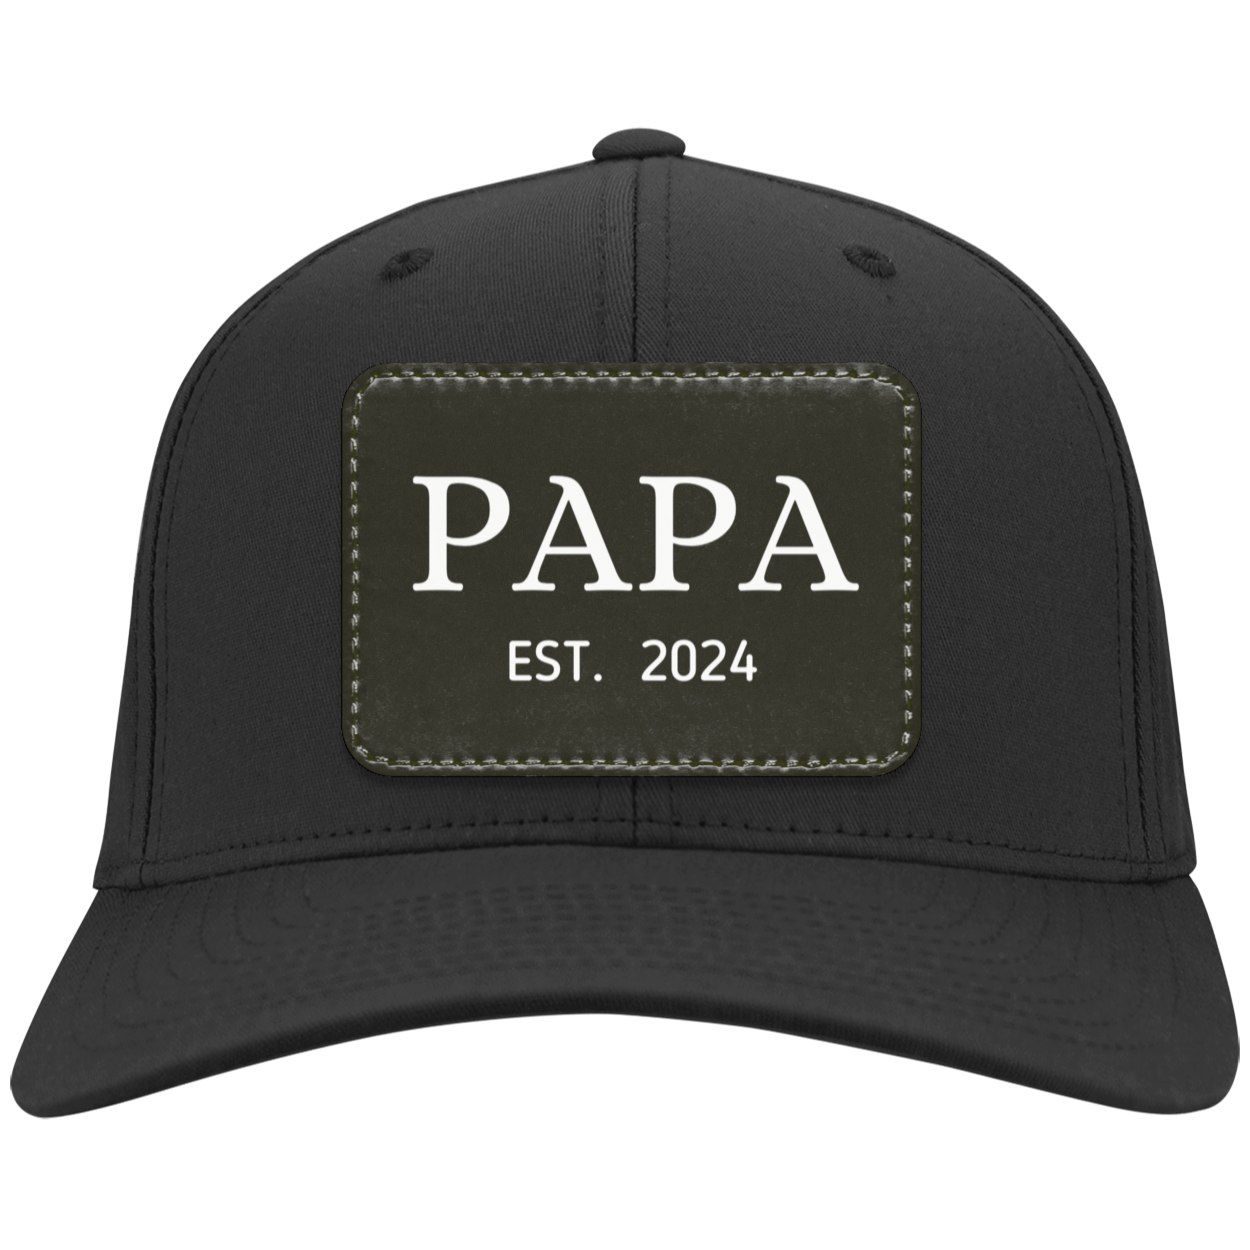 Papa (Est. 2024) Twill Cap